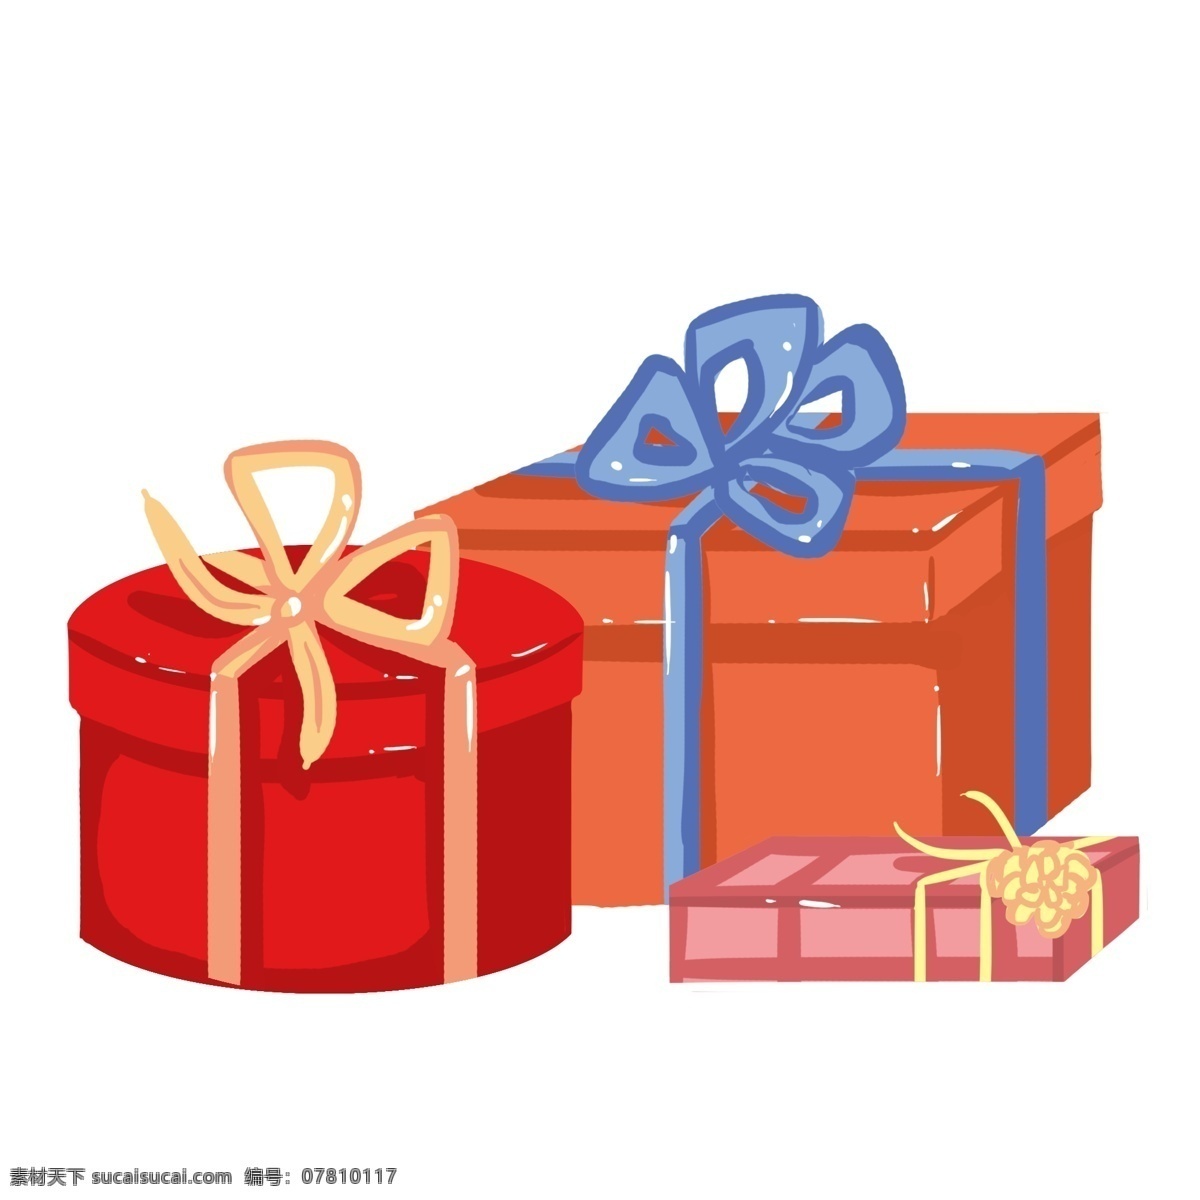 手绘 婚礼 礼物 插画 礼物盒 红色 蓝色 紫色 婚礼礼物 手绘礼物 礼物盒插画 粉色 爱情礼物